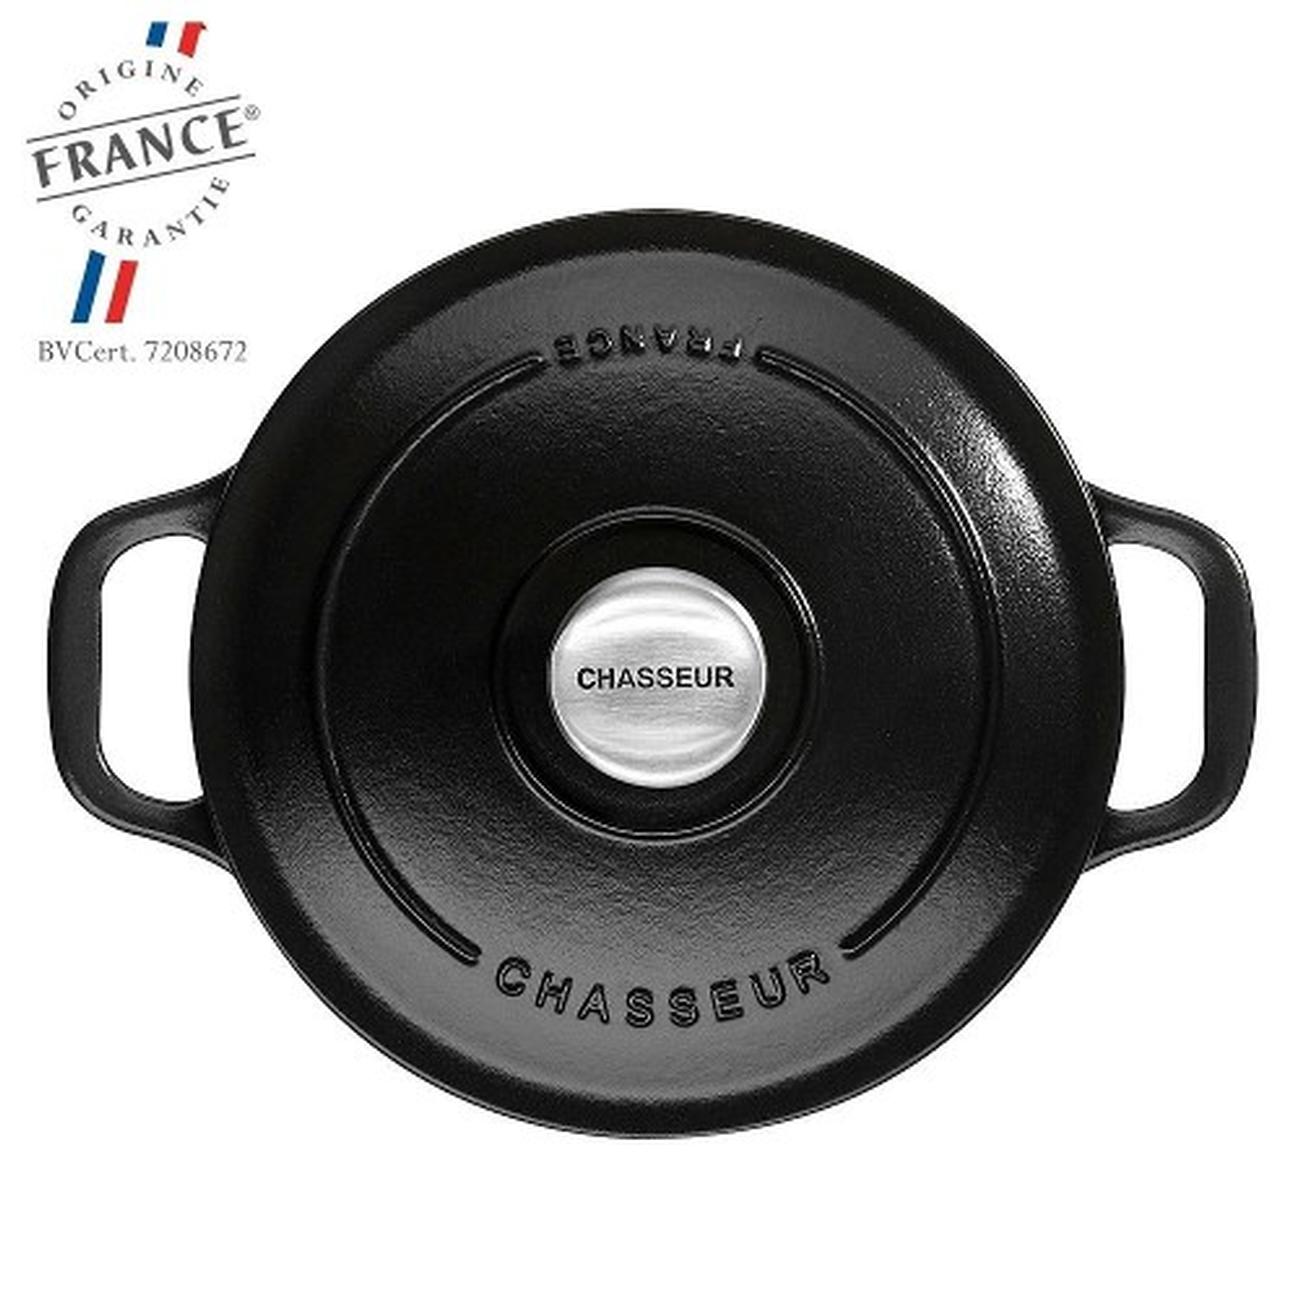 chasseaur-casserole-shallow-round-24cm-blackmatte-casserole - Chasseur Shallow Round Casserole 24cm-MatteBlack